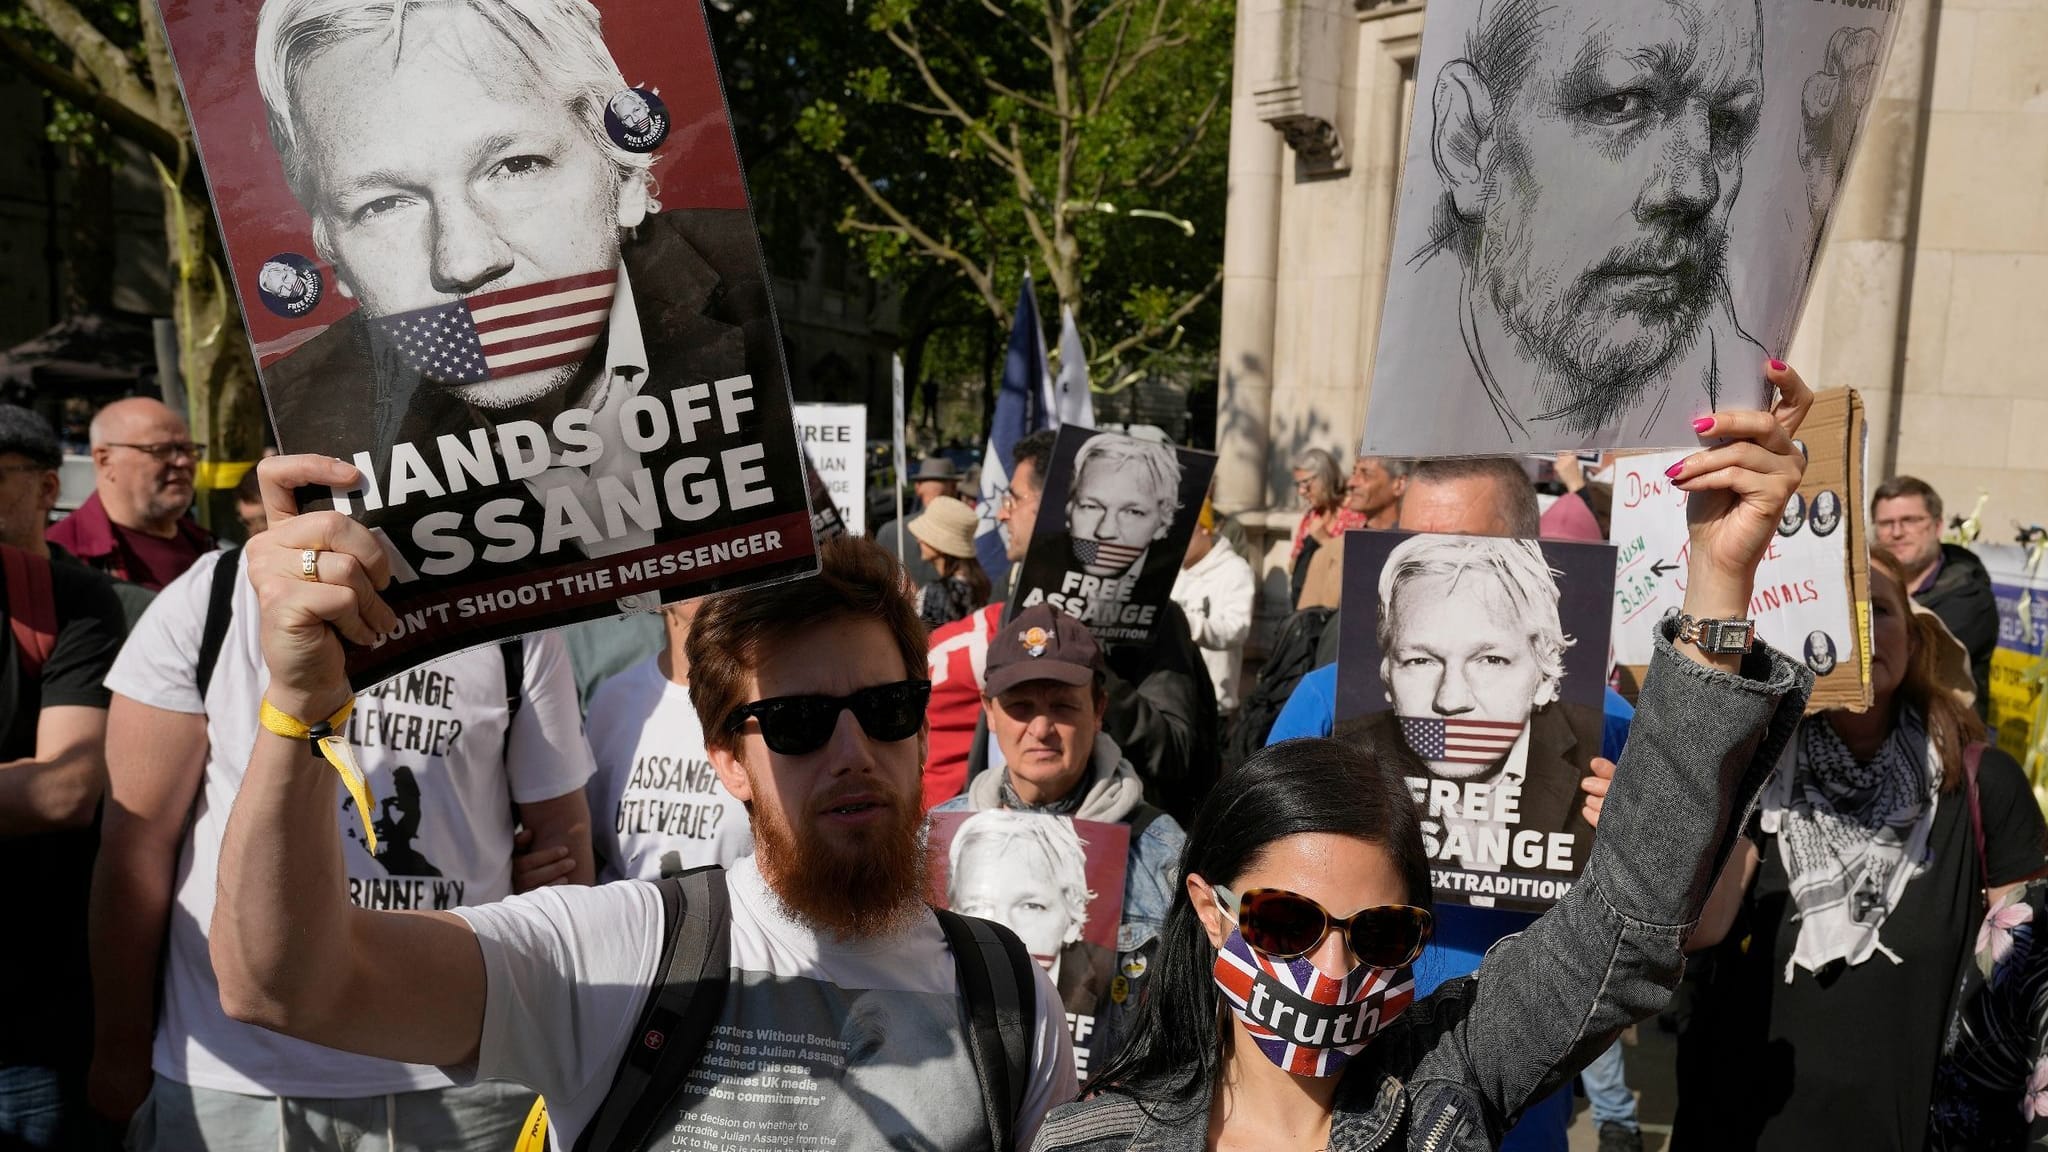 Jubel im Lager Assange: Vorerst keine Auslieferung an USA